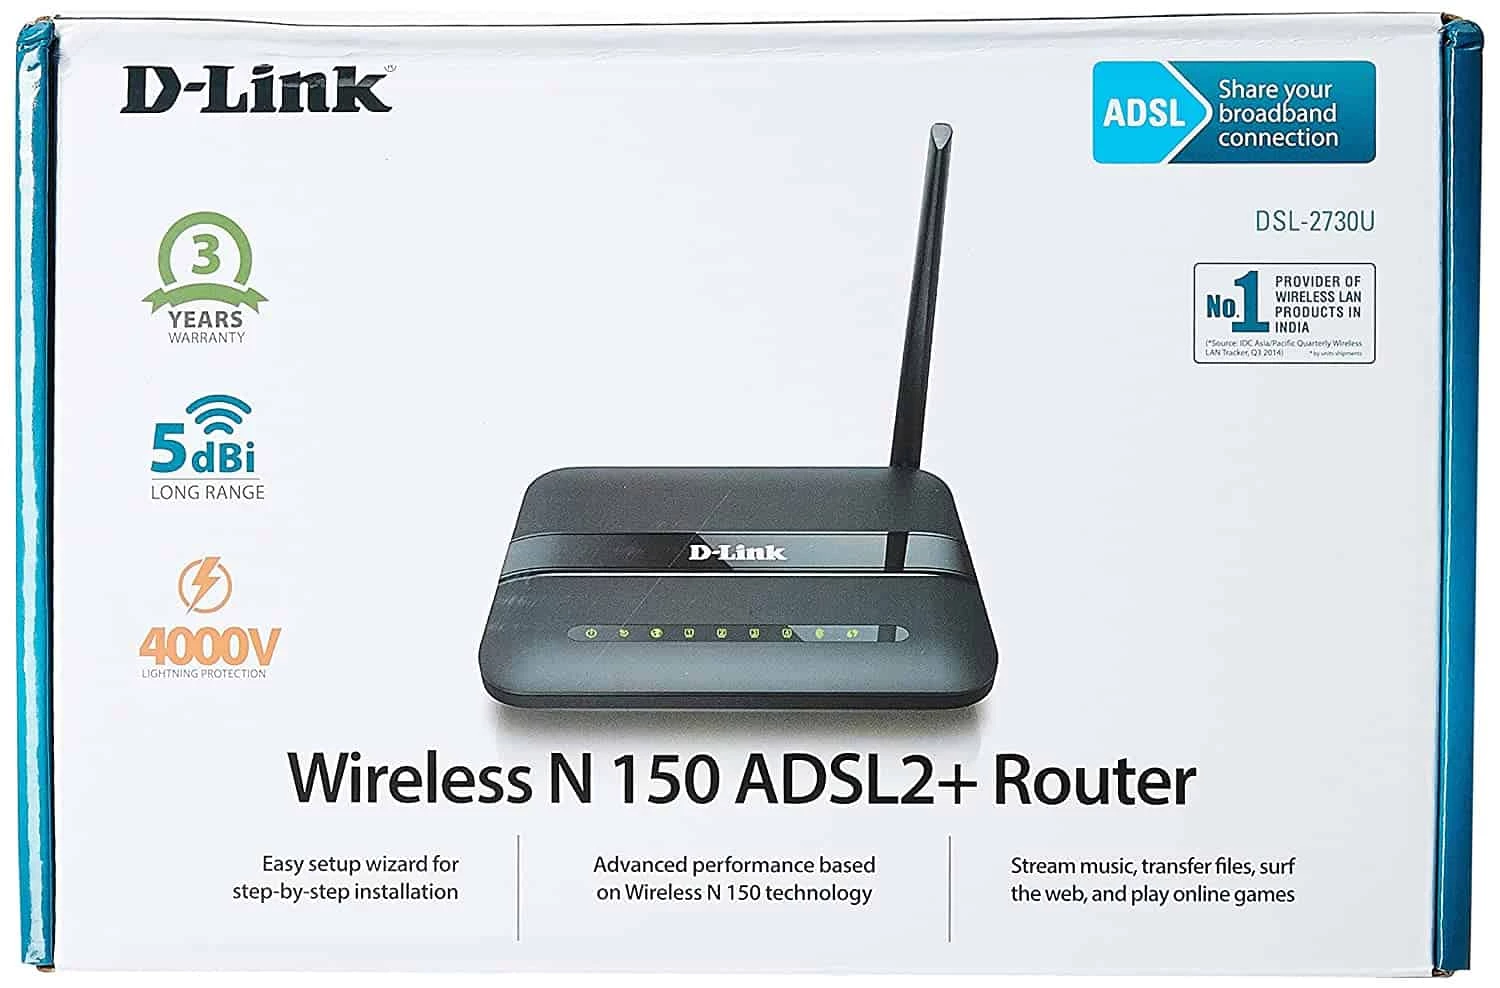 D-Link DSL-2730U Wireless-N 150 ADSL2+ 4-Port Router (Black) – DATAMATION